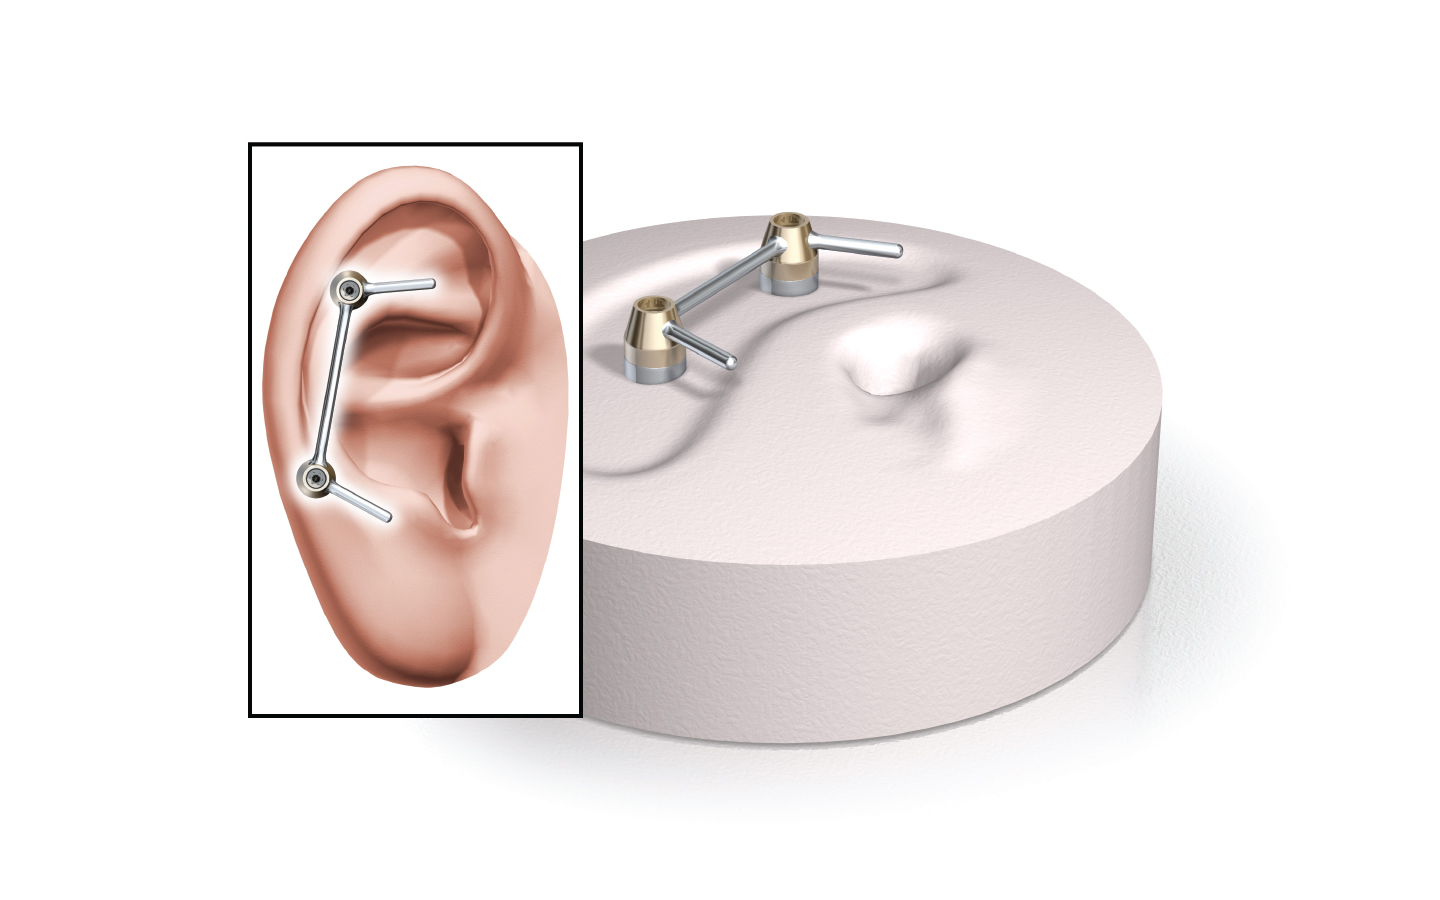 Ilustrace implantátů a protetického ucha systému Vistafix